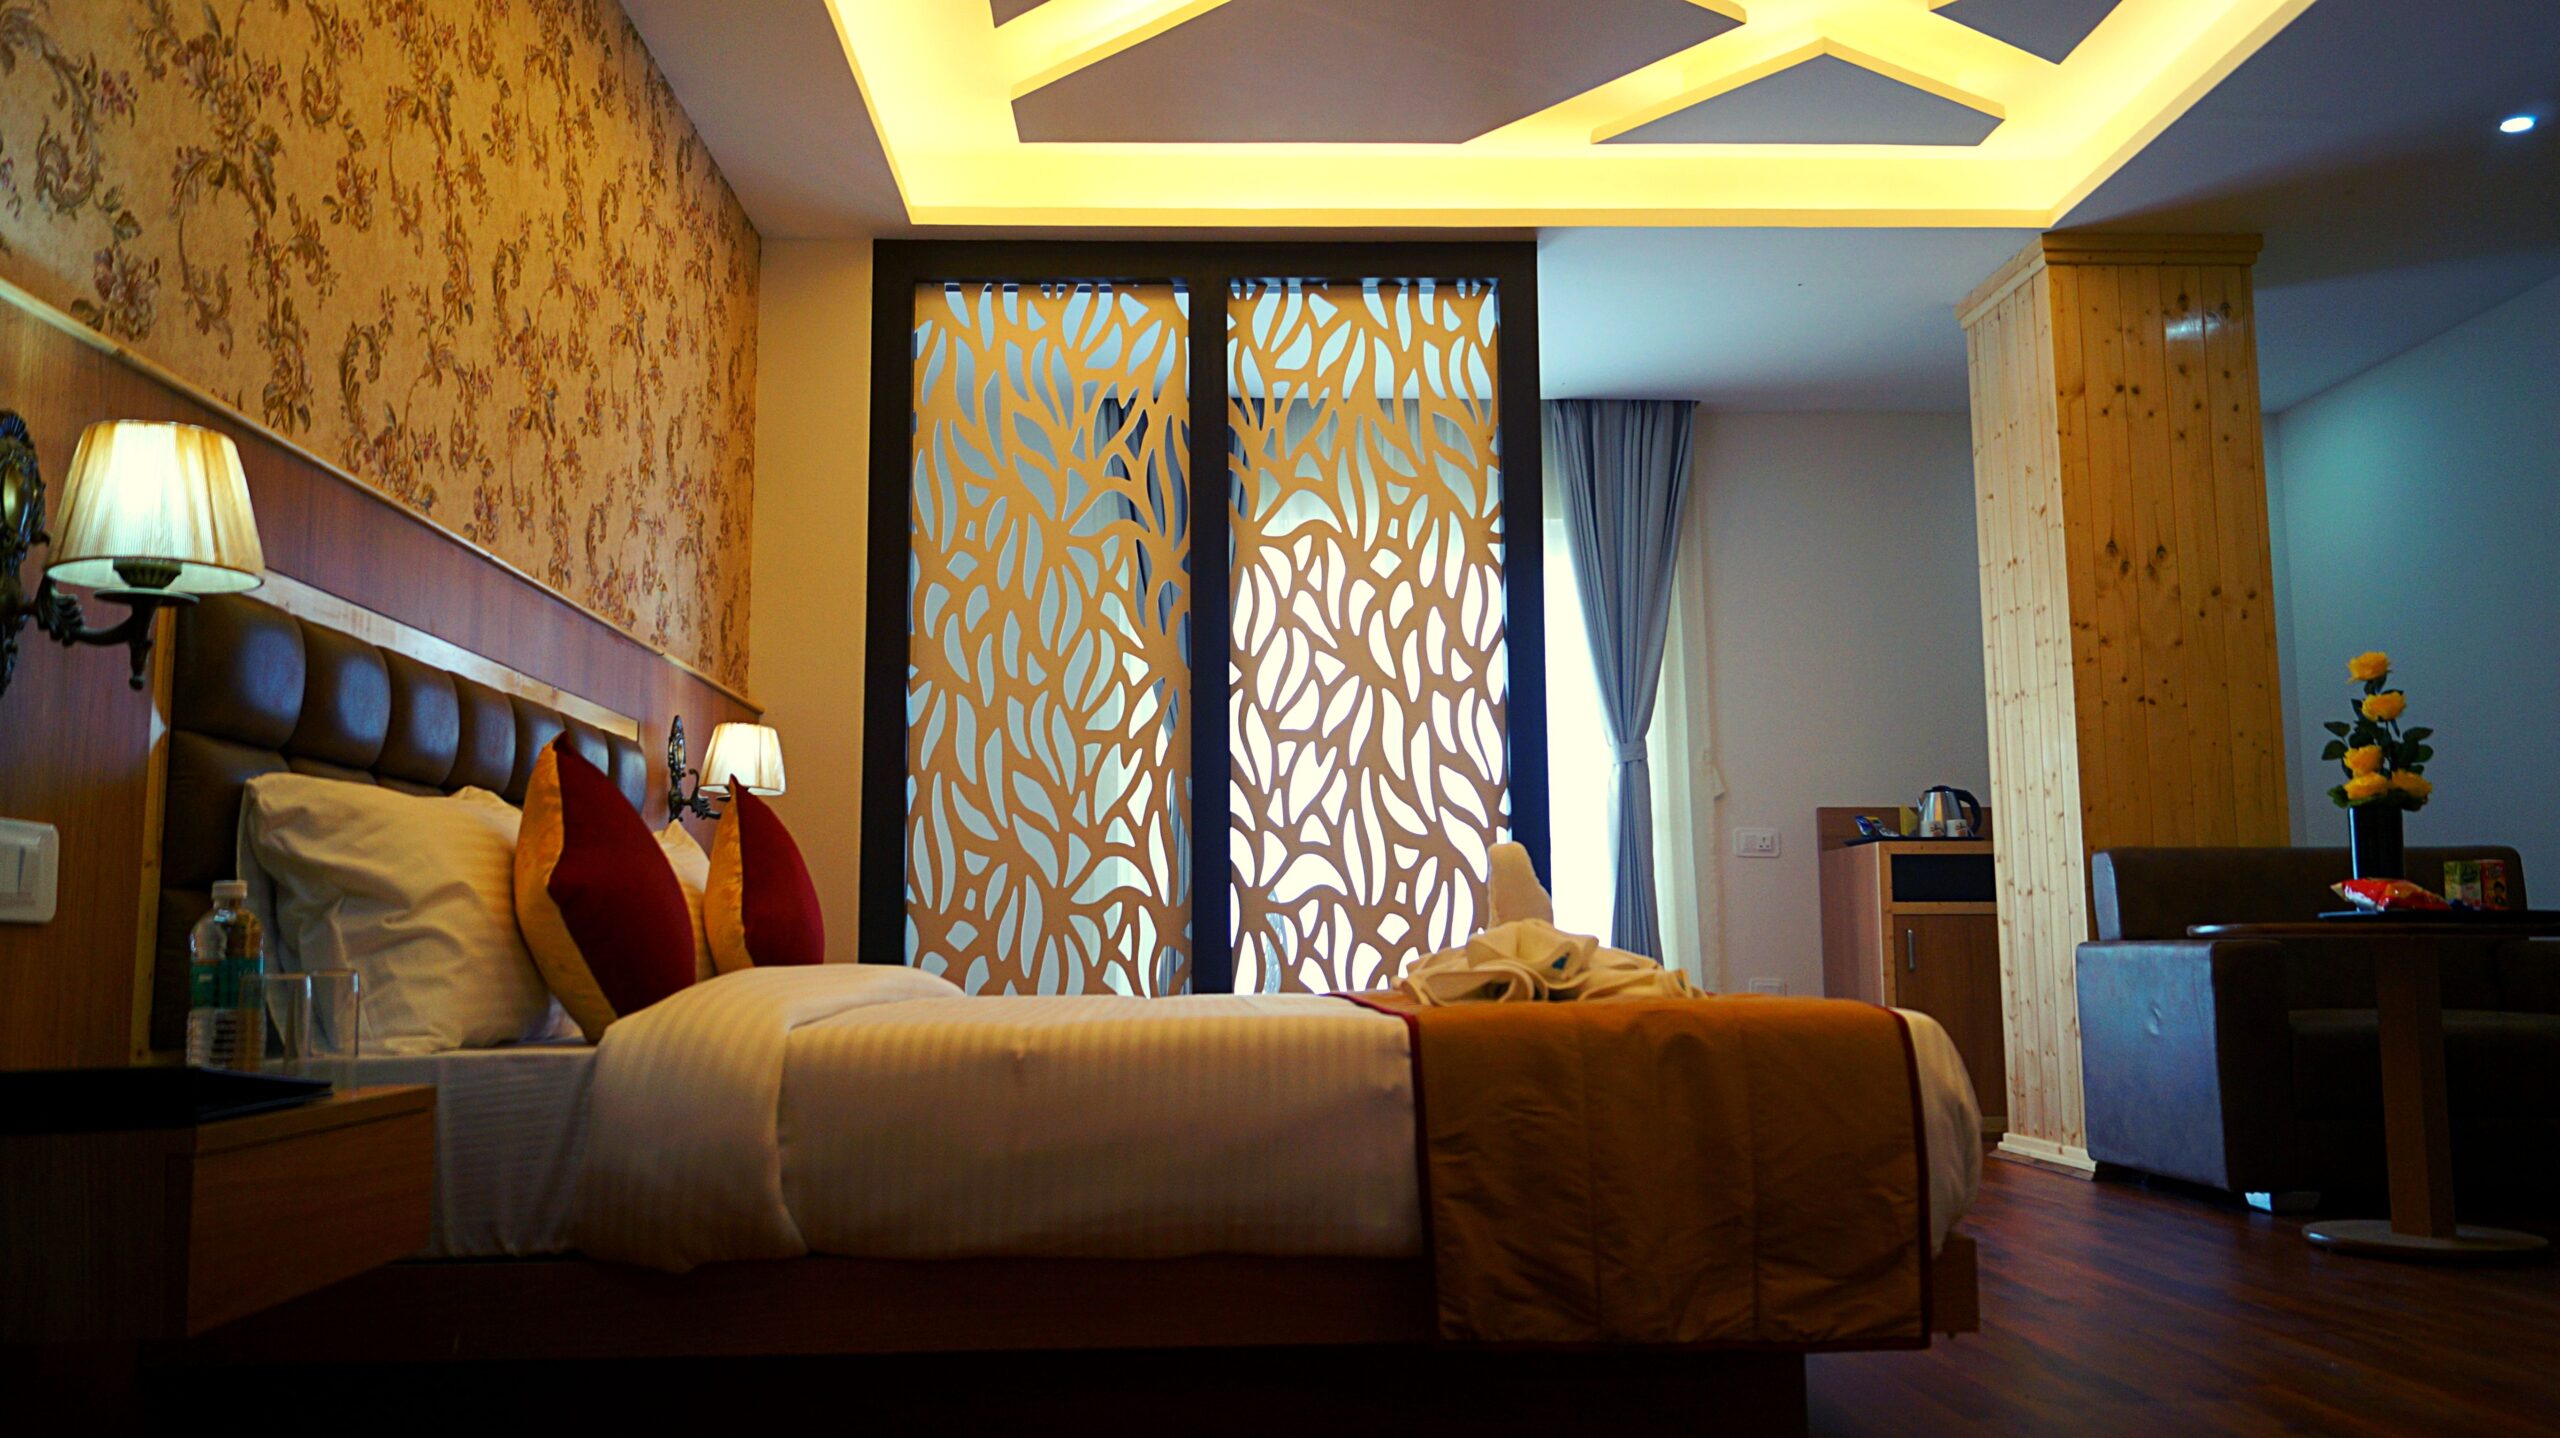 ShriGo Hotels & Resorts opens ShriGo Hotel Gangtok